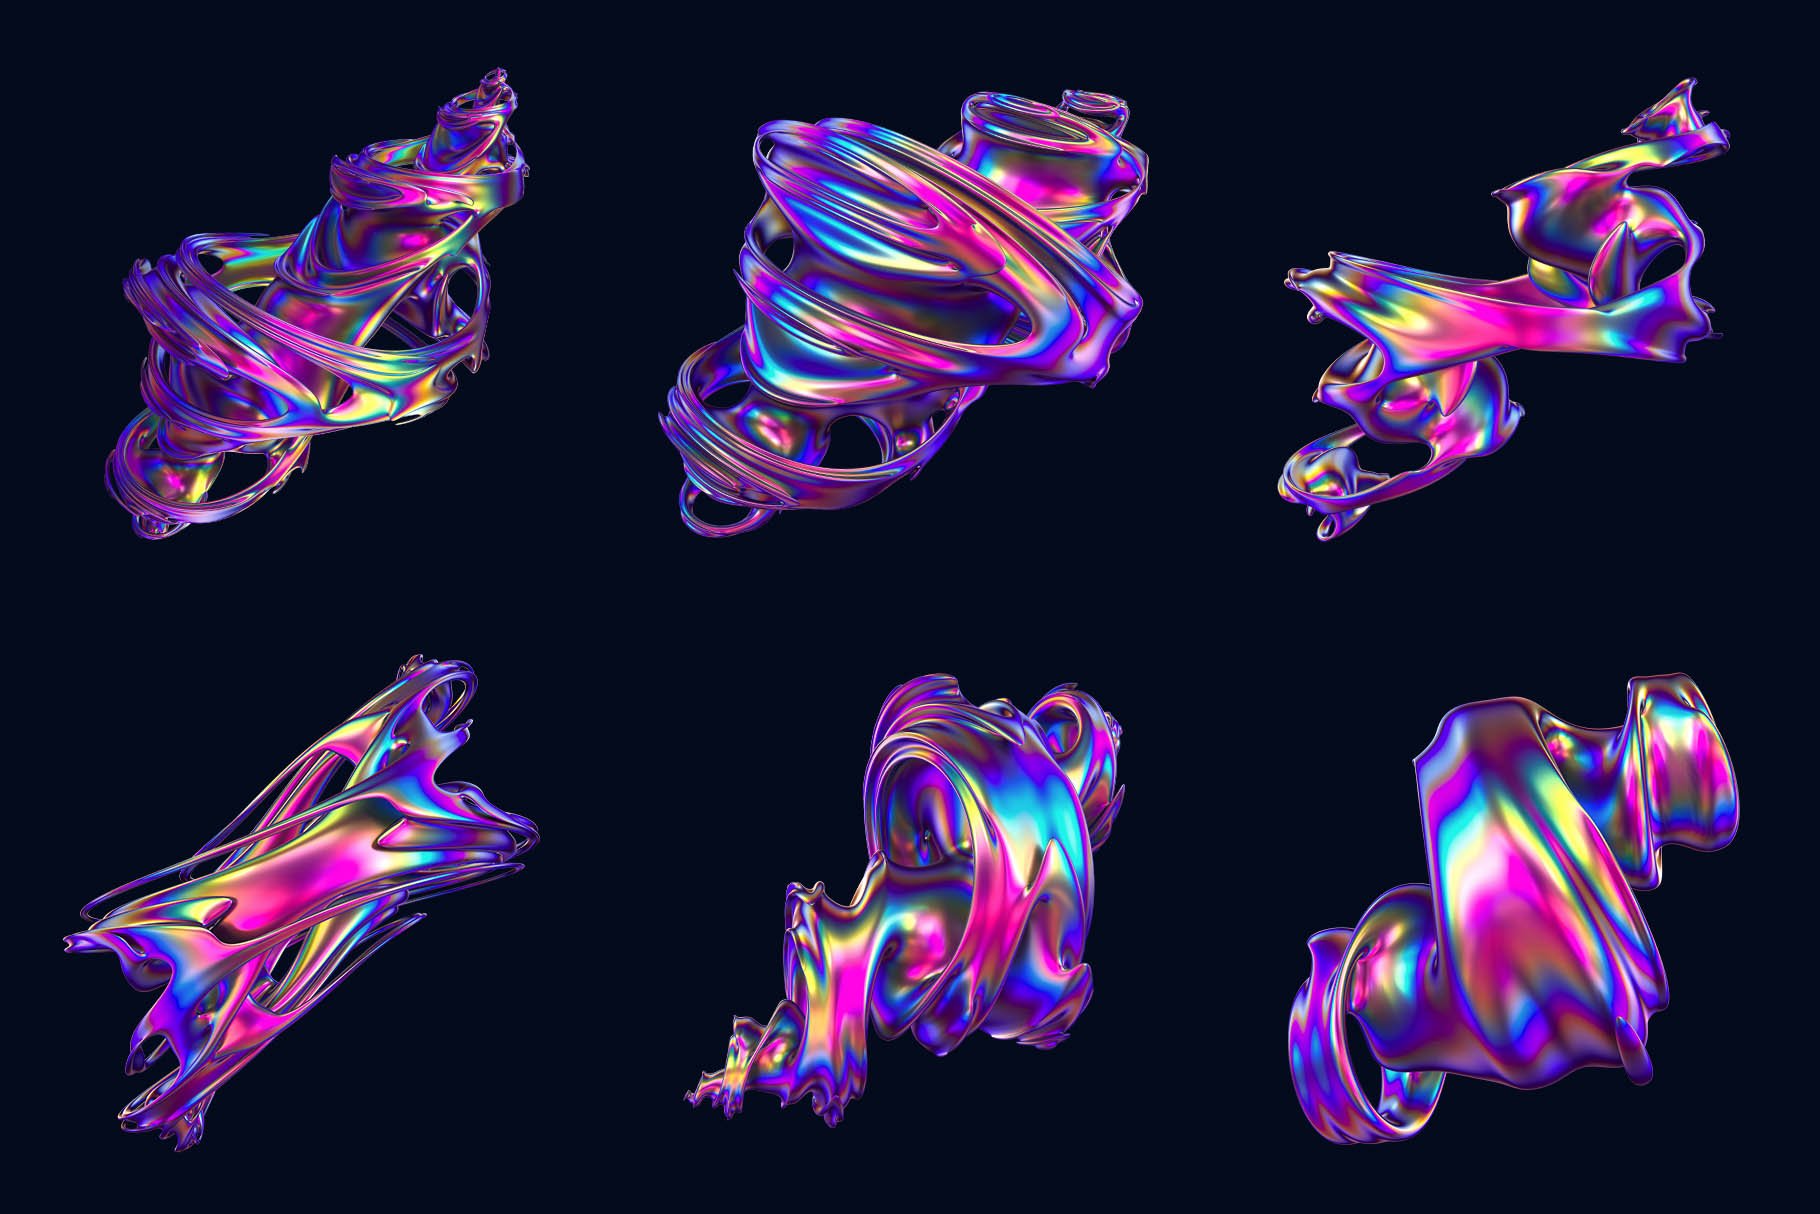 24款潮流抽象彩虹金属全息镭射艺术3D立体图形PNG免抠图片素材 Hyper – Abstract Cyclone Shapes